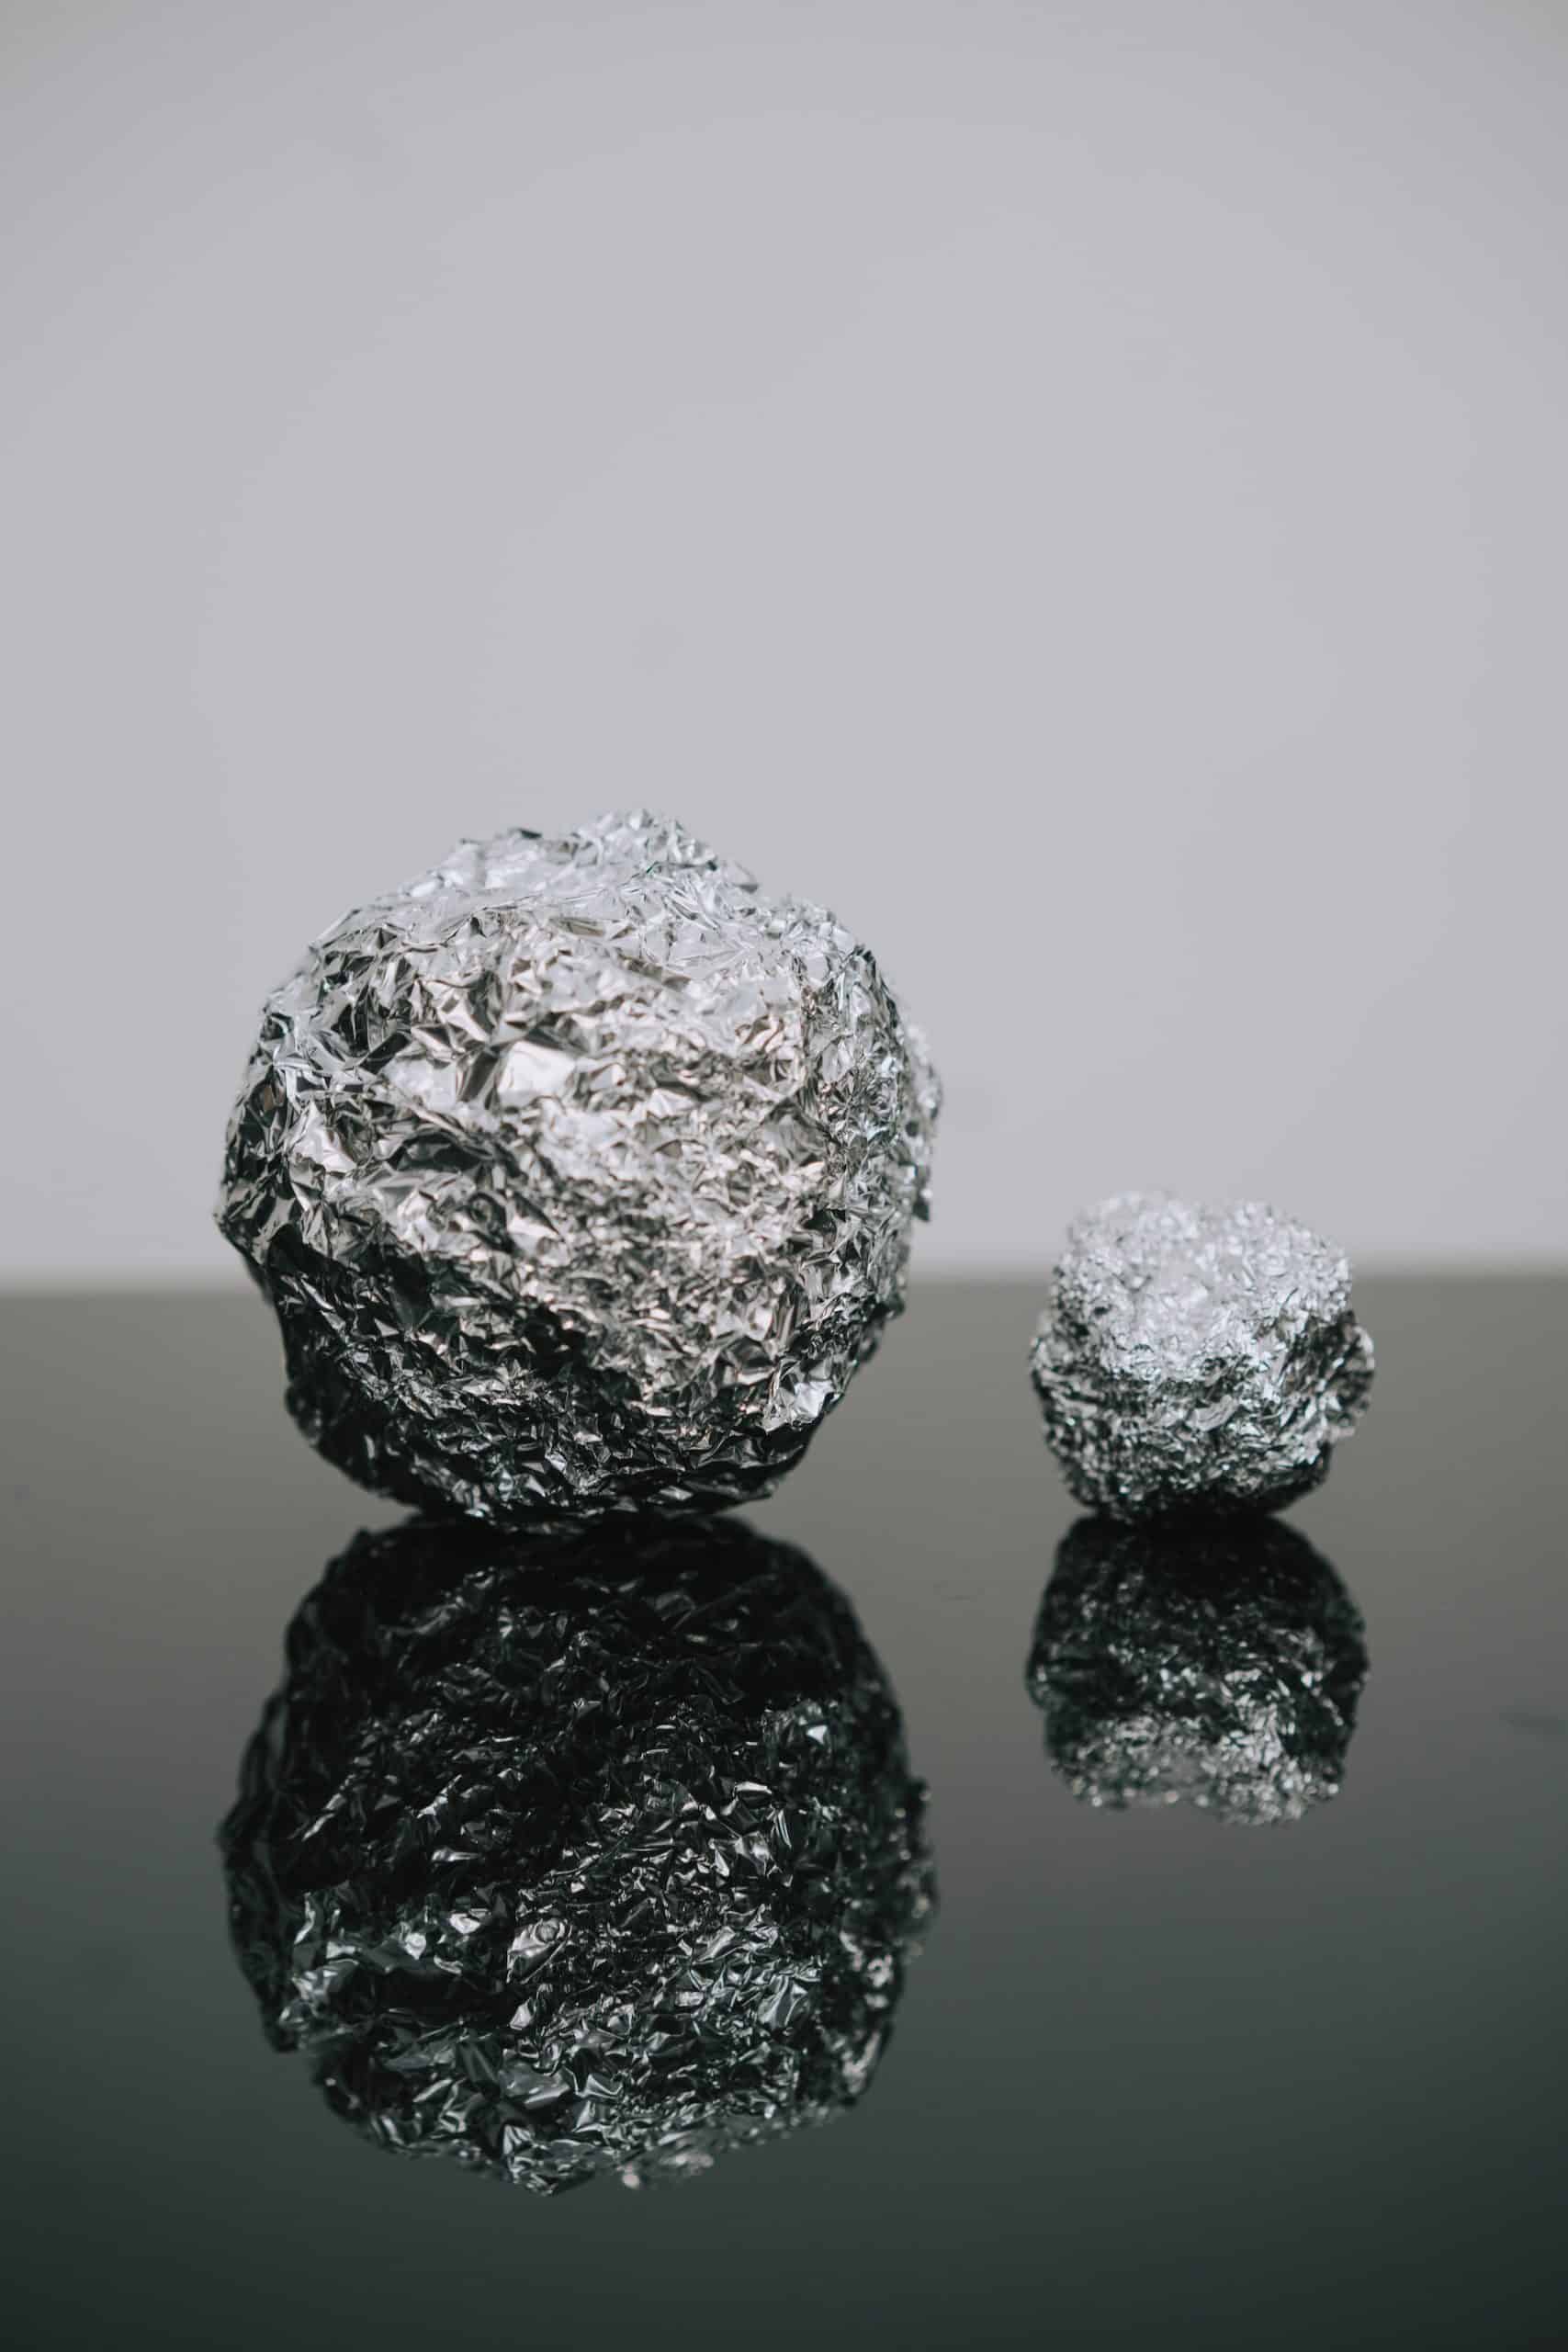 Ciekawostki o folii aluminiowej – sprawdź, czego nie wiesz o popularnym artykule kuchennym